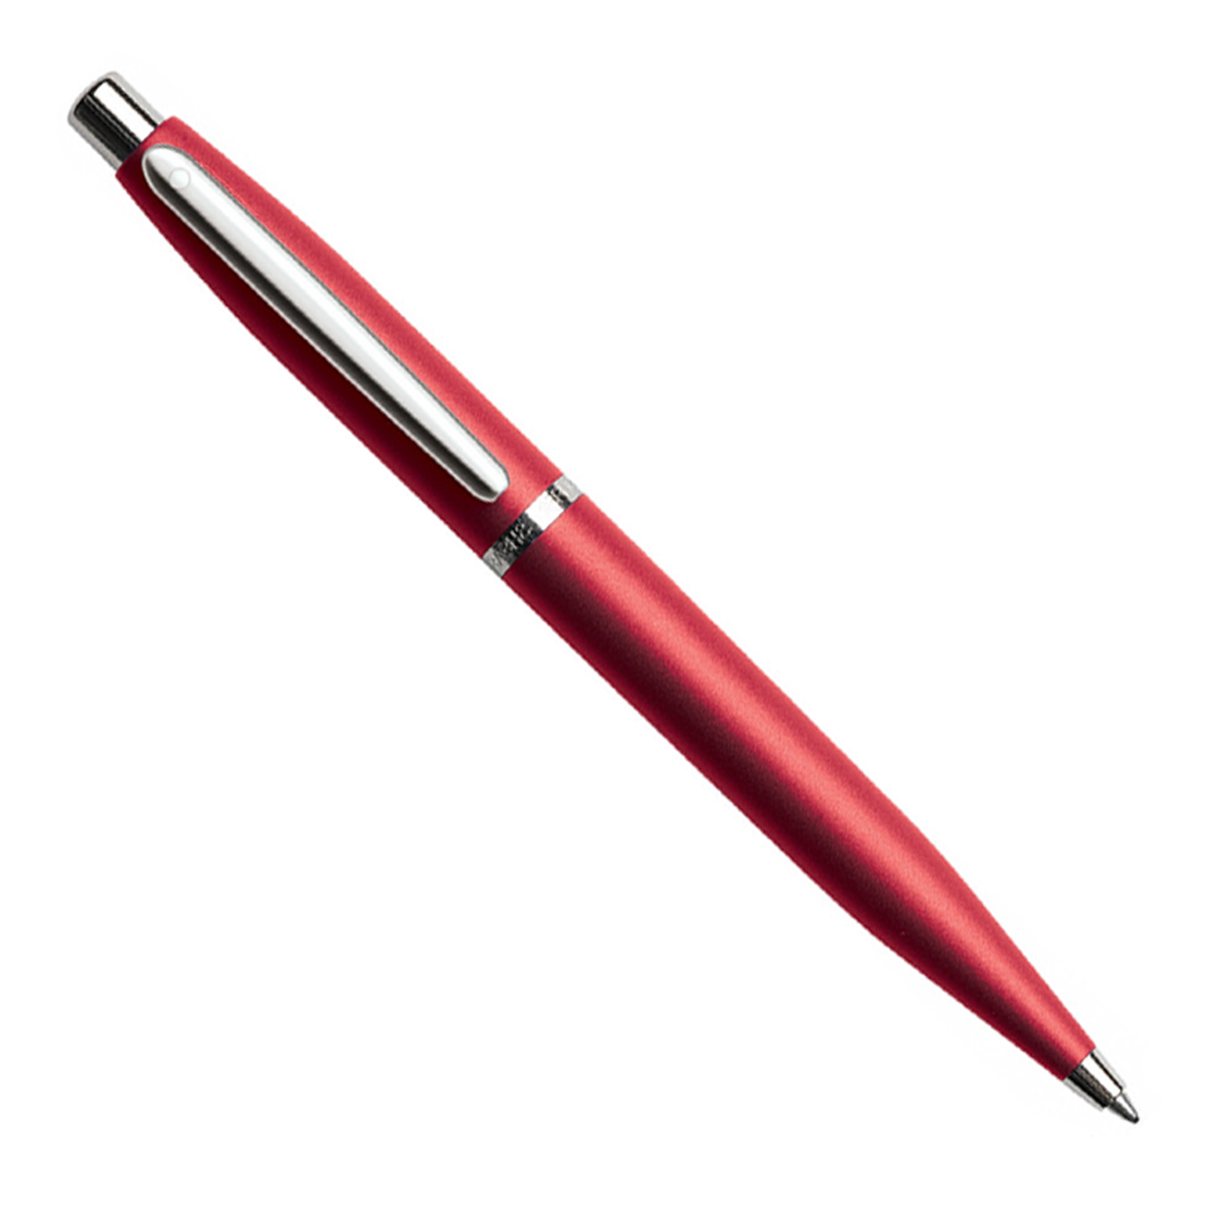 Sheaffer VFM Excessive Red w/Chrome Trim - Ballpoint Pen